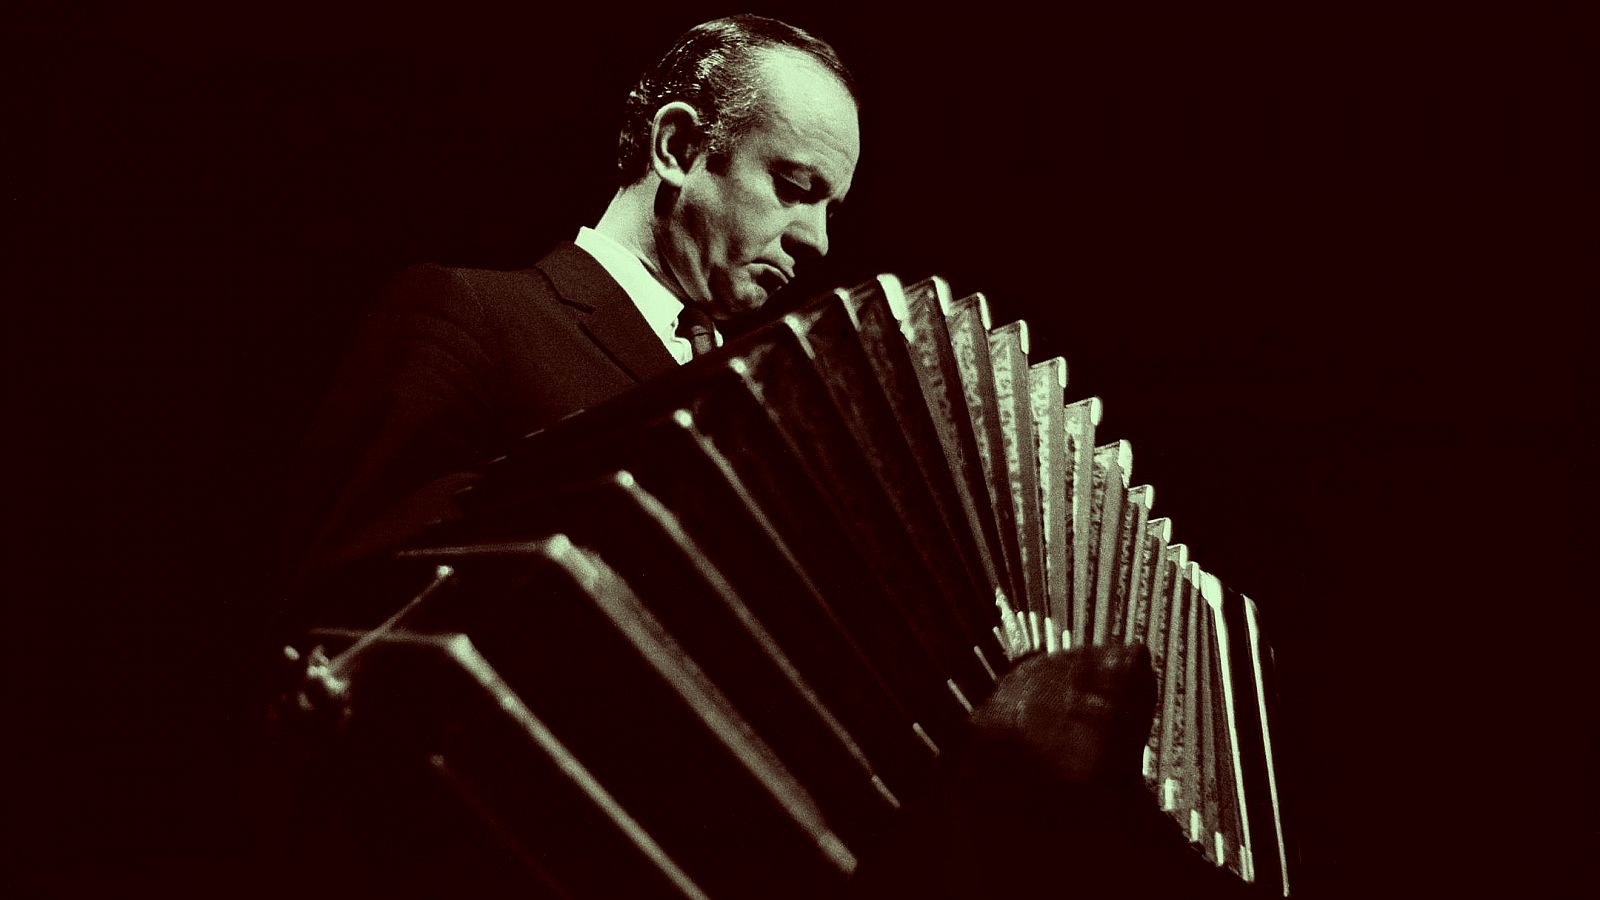 En Radio Clásica celebramos loa 100 años del nacimiento de Astor Piazzolla